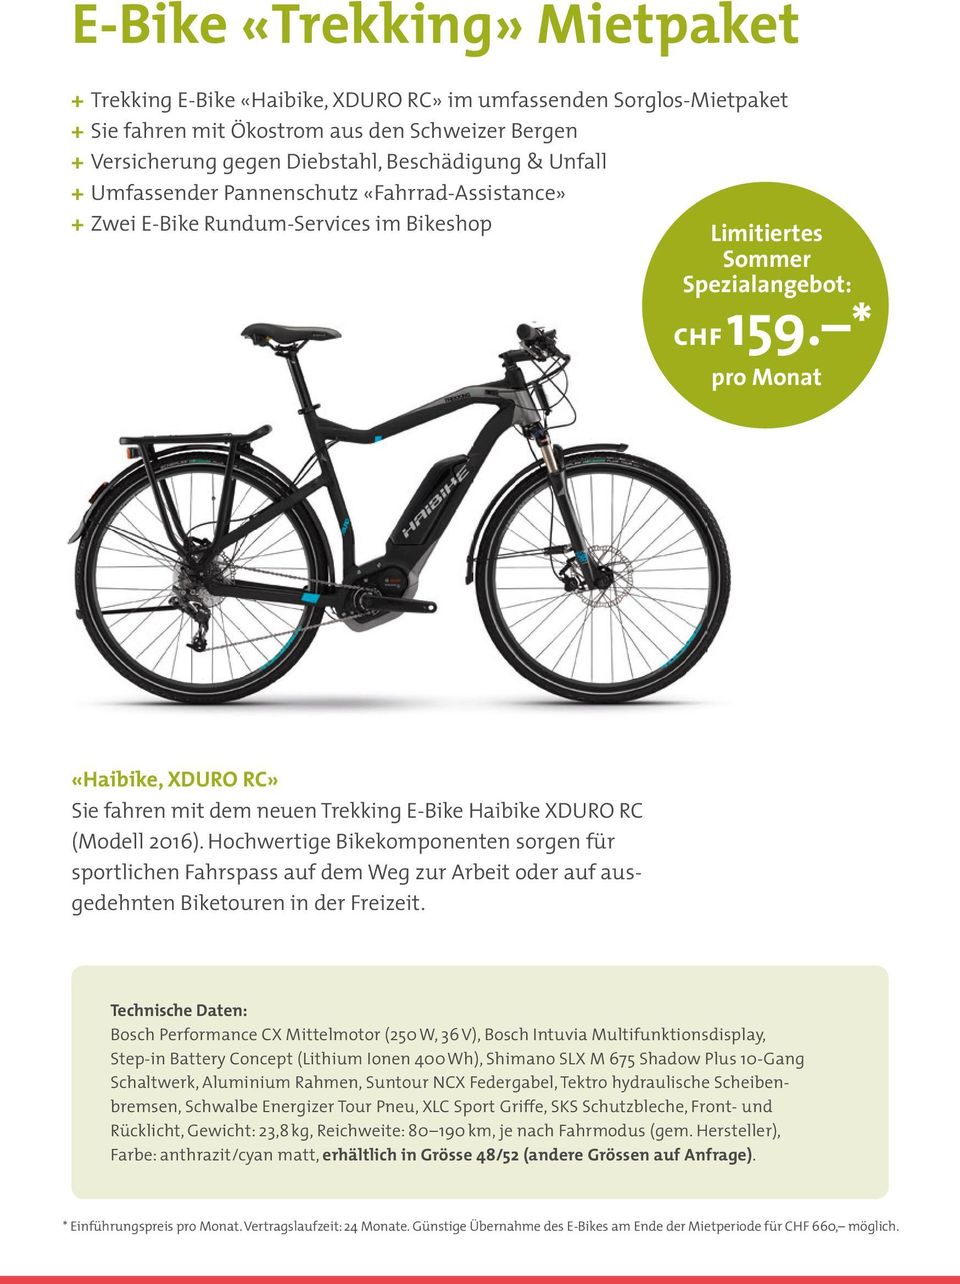 * pro Monat «Haibike, XDURO RC» Sie fahren mit dem neuen Trekking E-Bike Haibike XDURO RC ( Modell 2016).